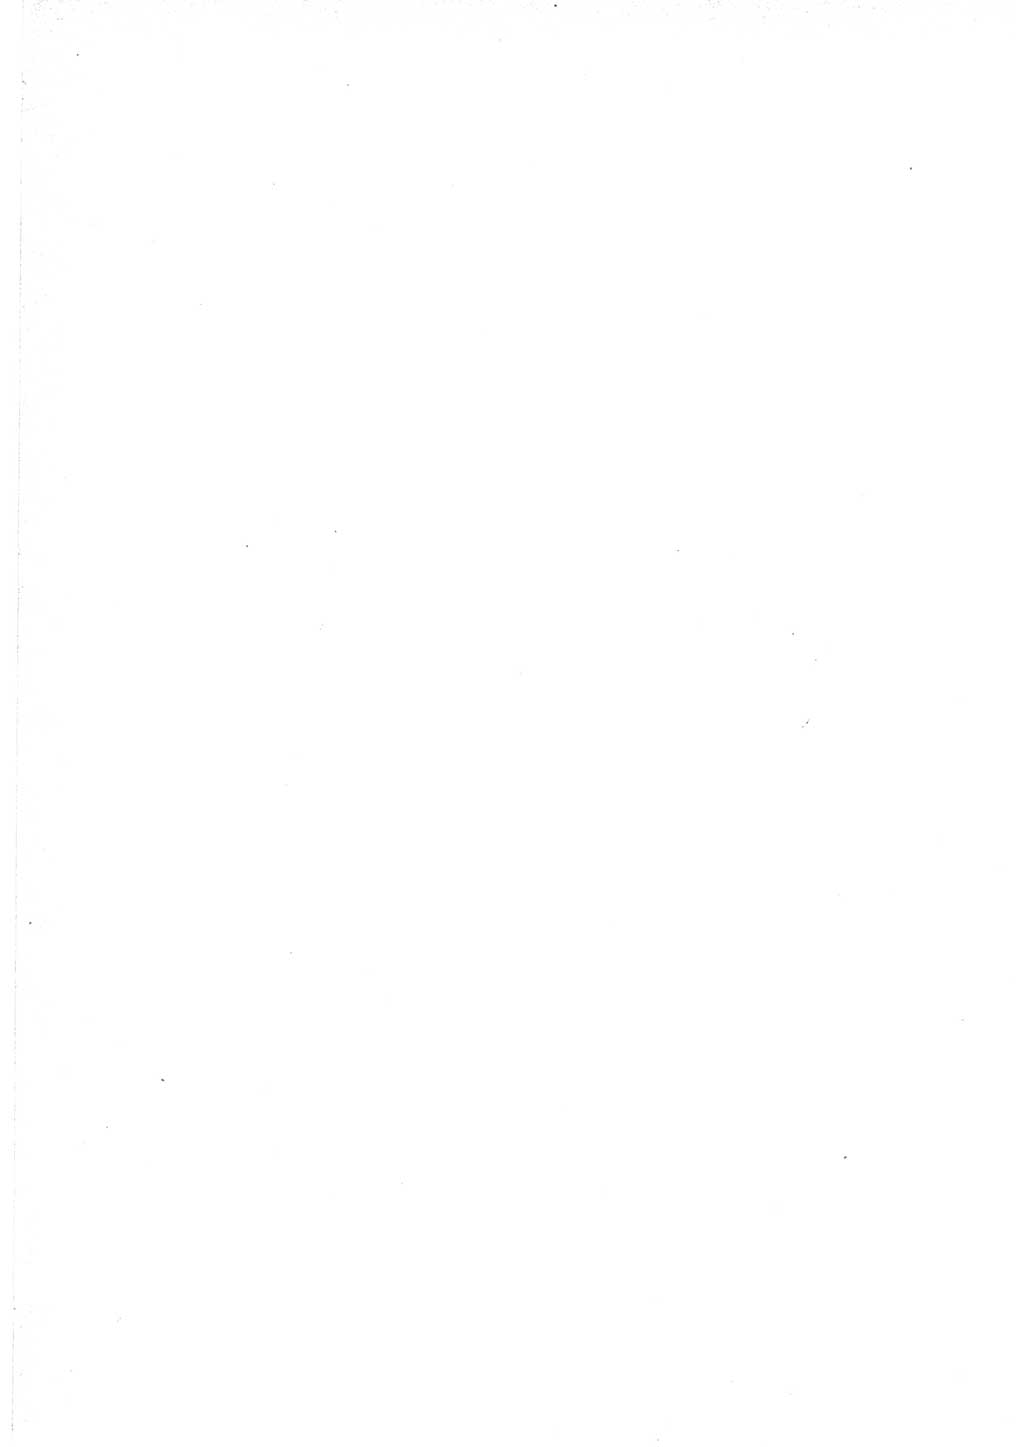 Protokoll der Verhandlungen des Ⅵ. Parteitages der Sozialistischen Einheitspartei Deutschlands (SED) [Deutsche Demokratische Republik (DDR)] 1963, Band Ⅰ, Seite 6 (Prot. Verh. Ⅵ. PT SED DDR 1963, Bd. Ⅰ, S. 6)